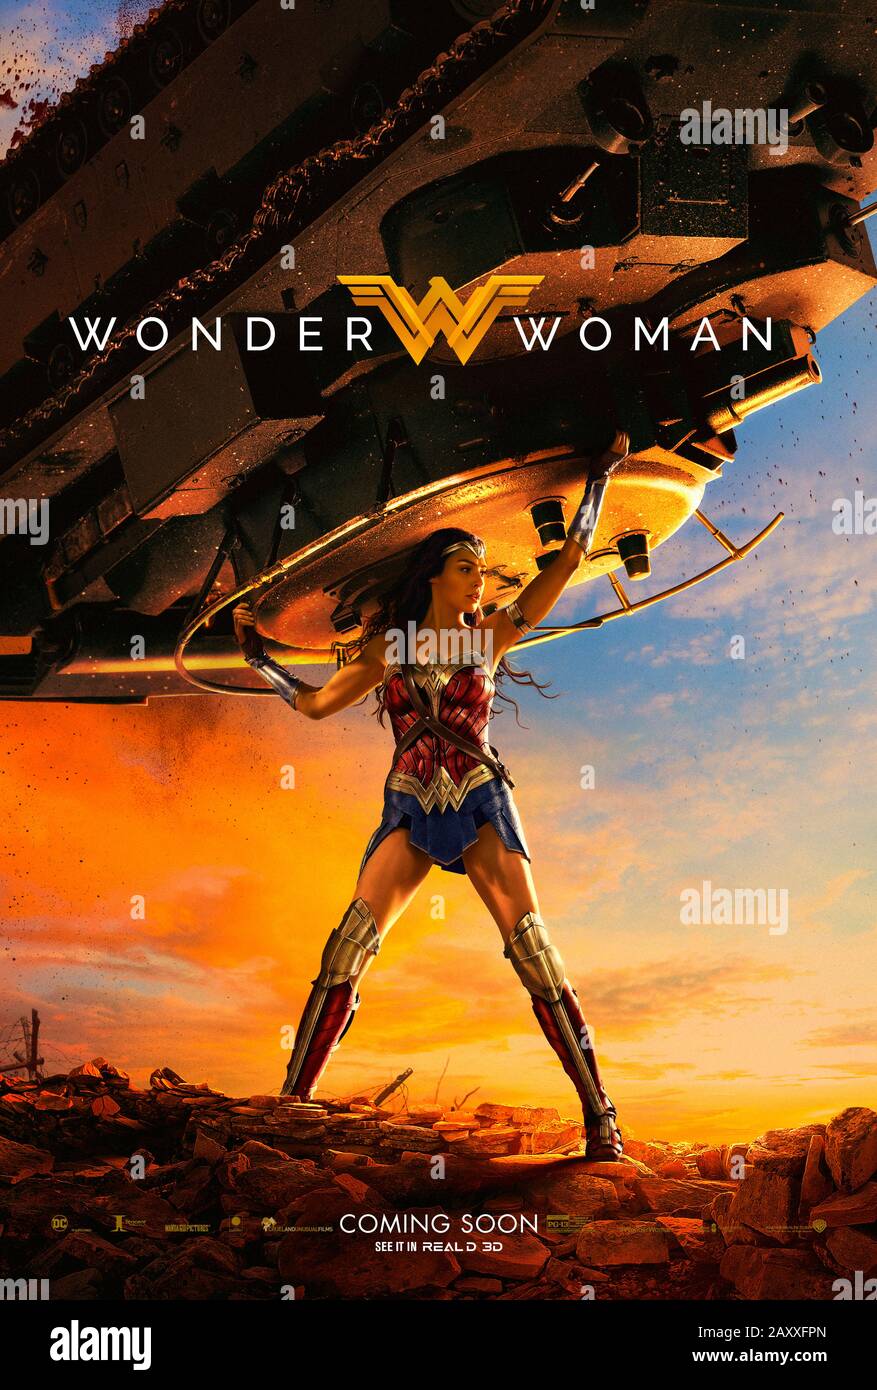 Wonder Woman (2017) unter der Regie von Patty Jenkins und mit Gal Gadot, Chris Pine, Robin Wright, Ewen Bremner und Connie Nielsen in den Hauptrollen. DC Comics Amazonische Kriegerin Diana trifft auf die große Leinwand und hilft der Menschheit während des ersten Weltkriegs Stockfoto